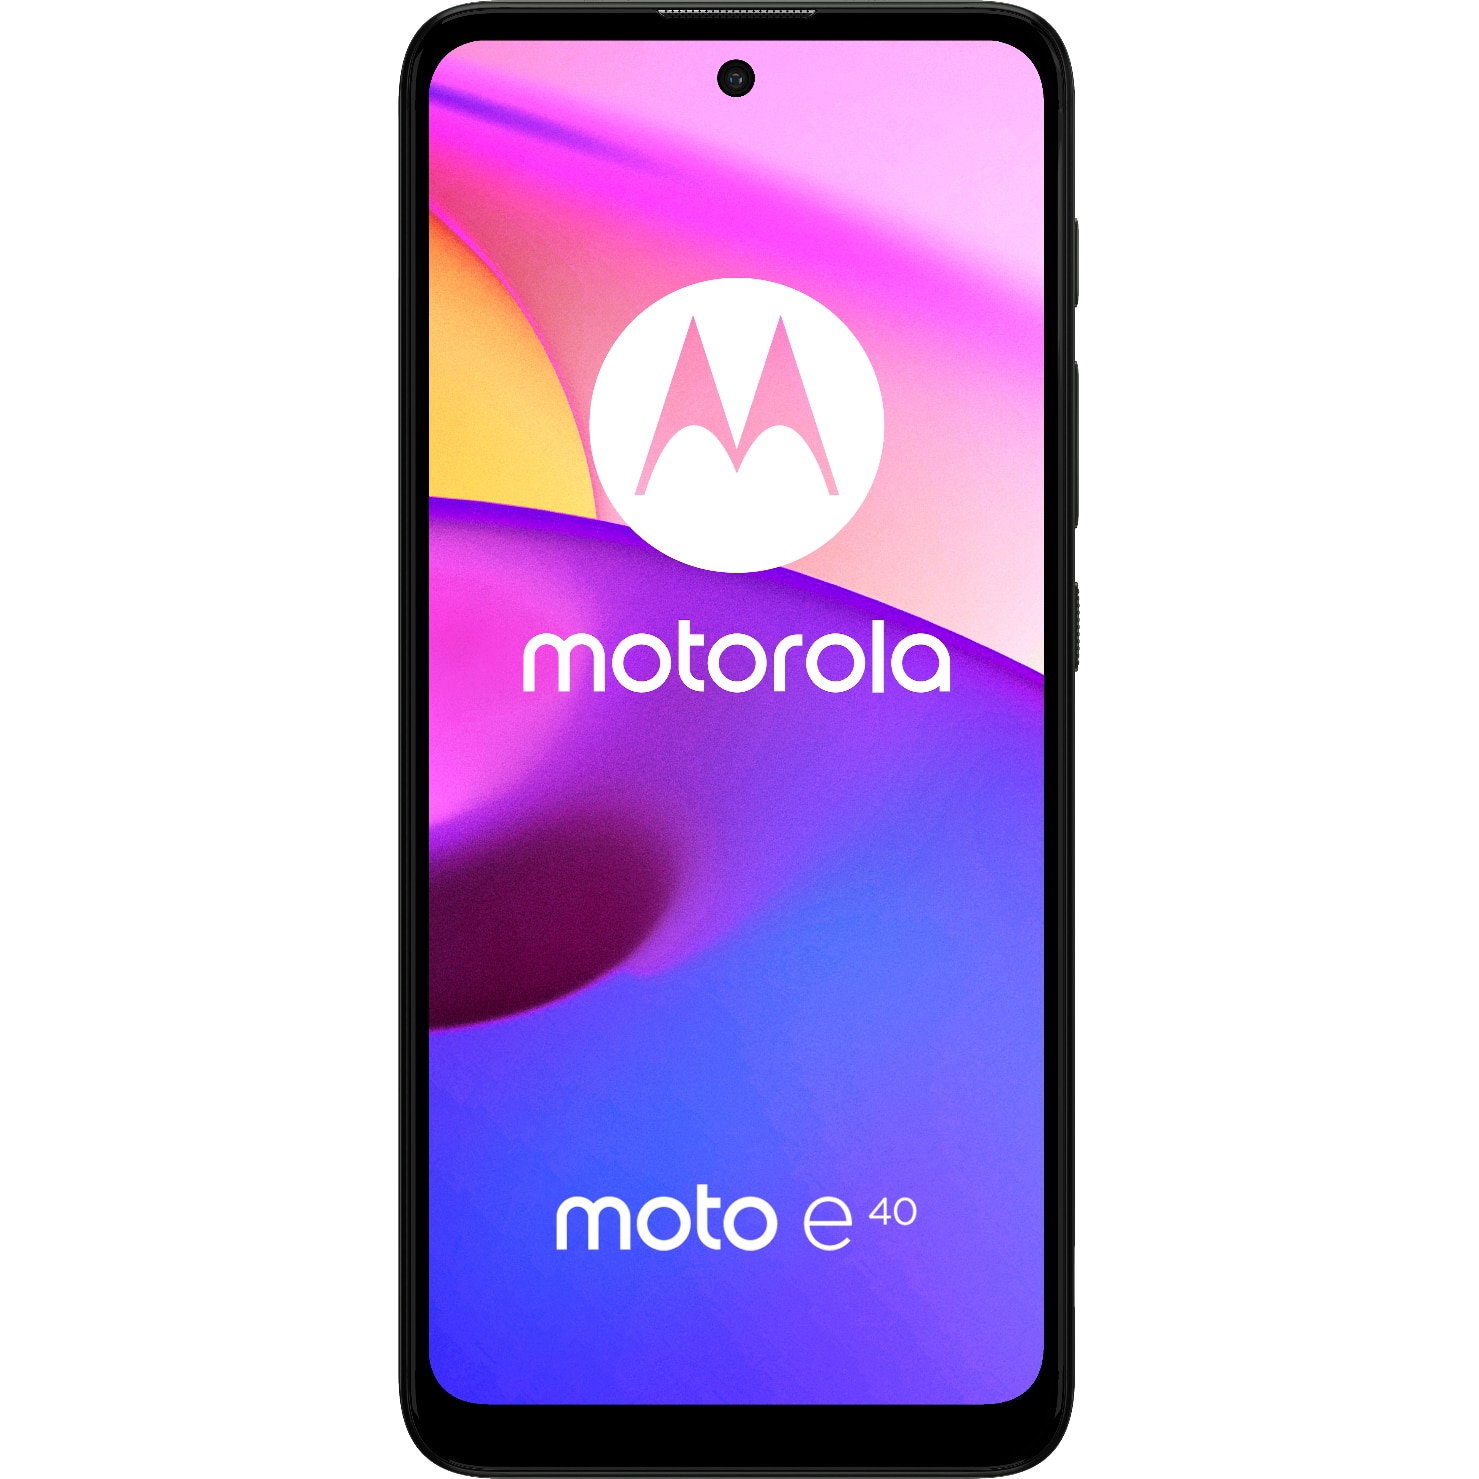 moto e40 - 2021 android smartphone